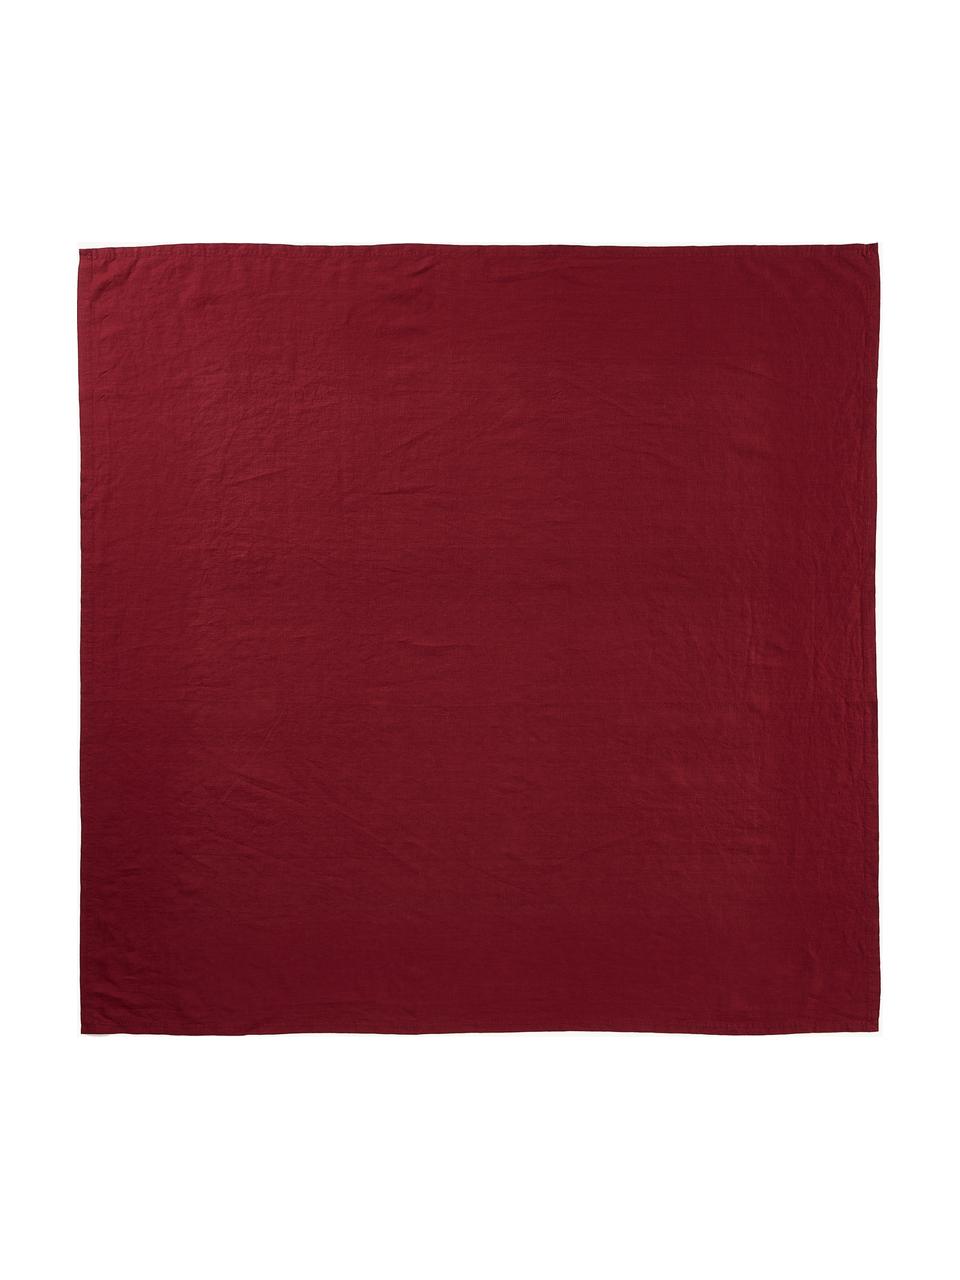 Tovaglia in lino rosso Pembroke, 100% lino, Rosso, Per 4 - 6 persone (Larg. 140 x Lung. 140 cm)